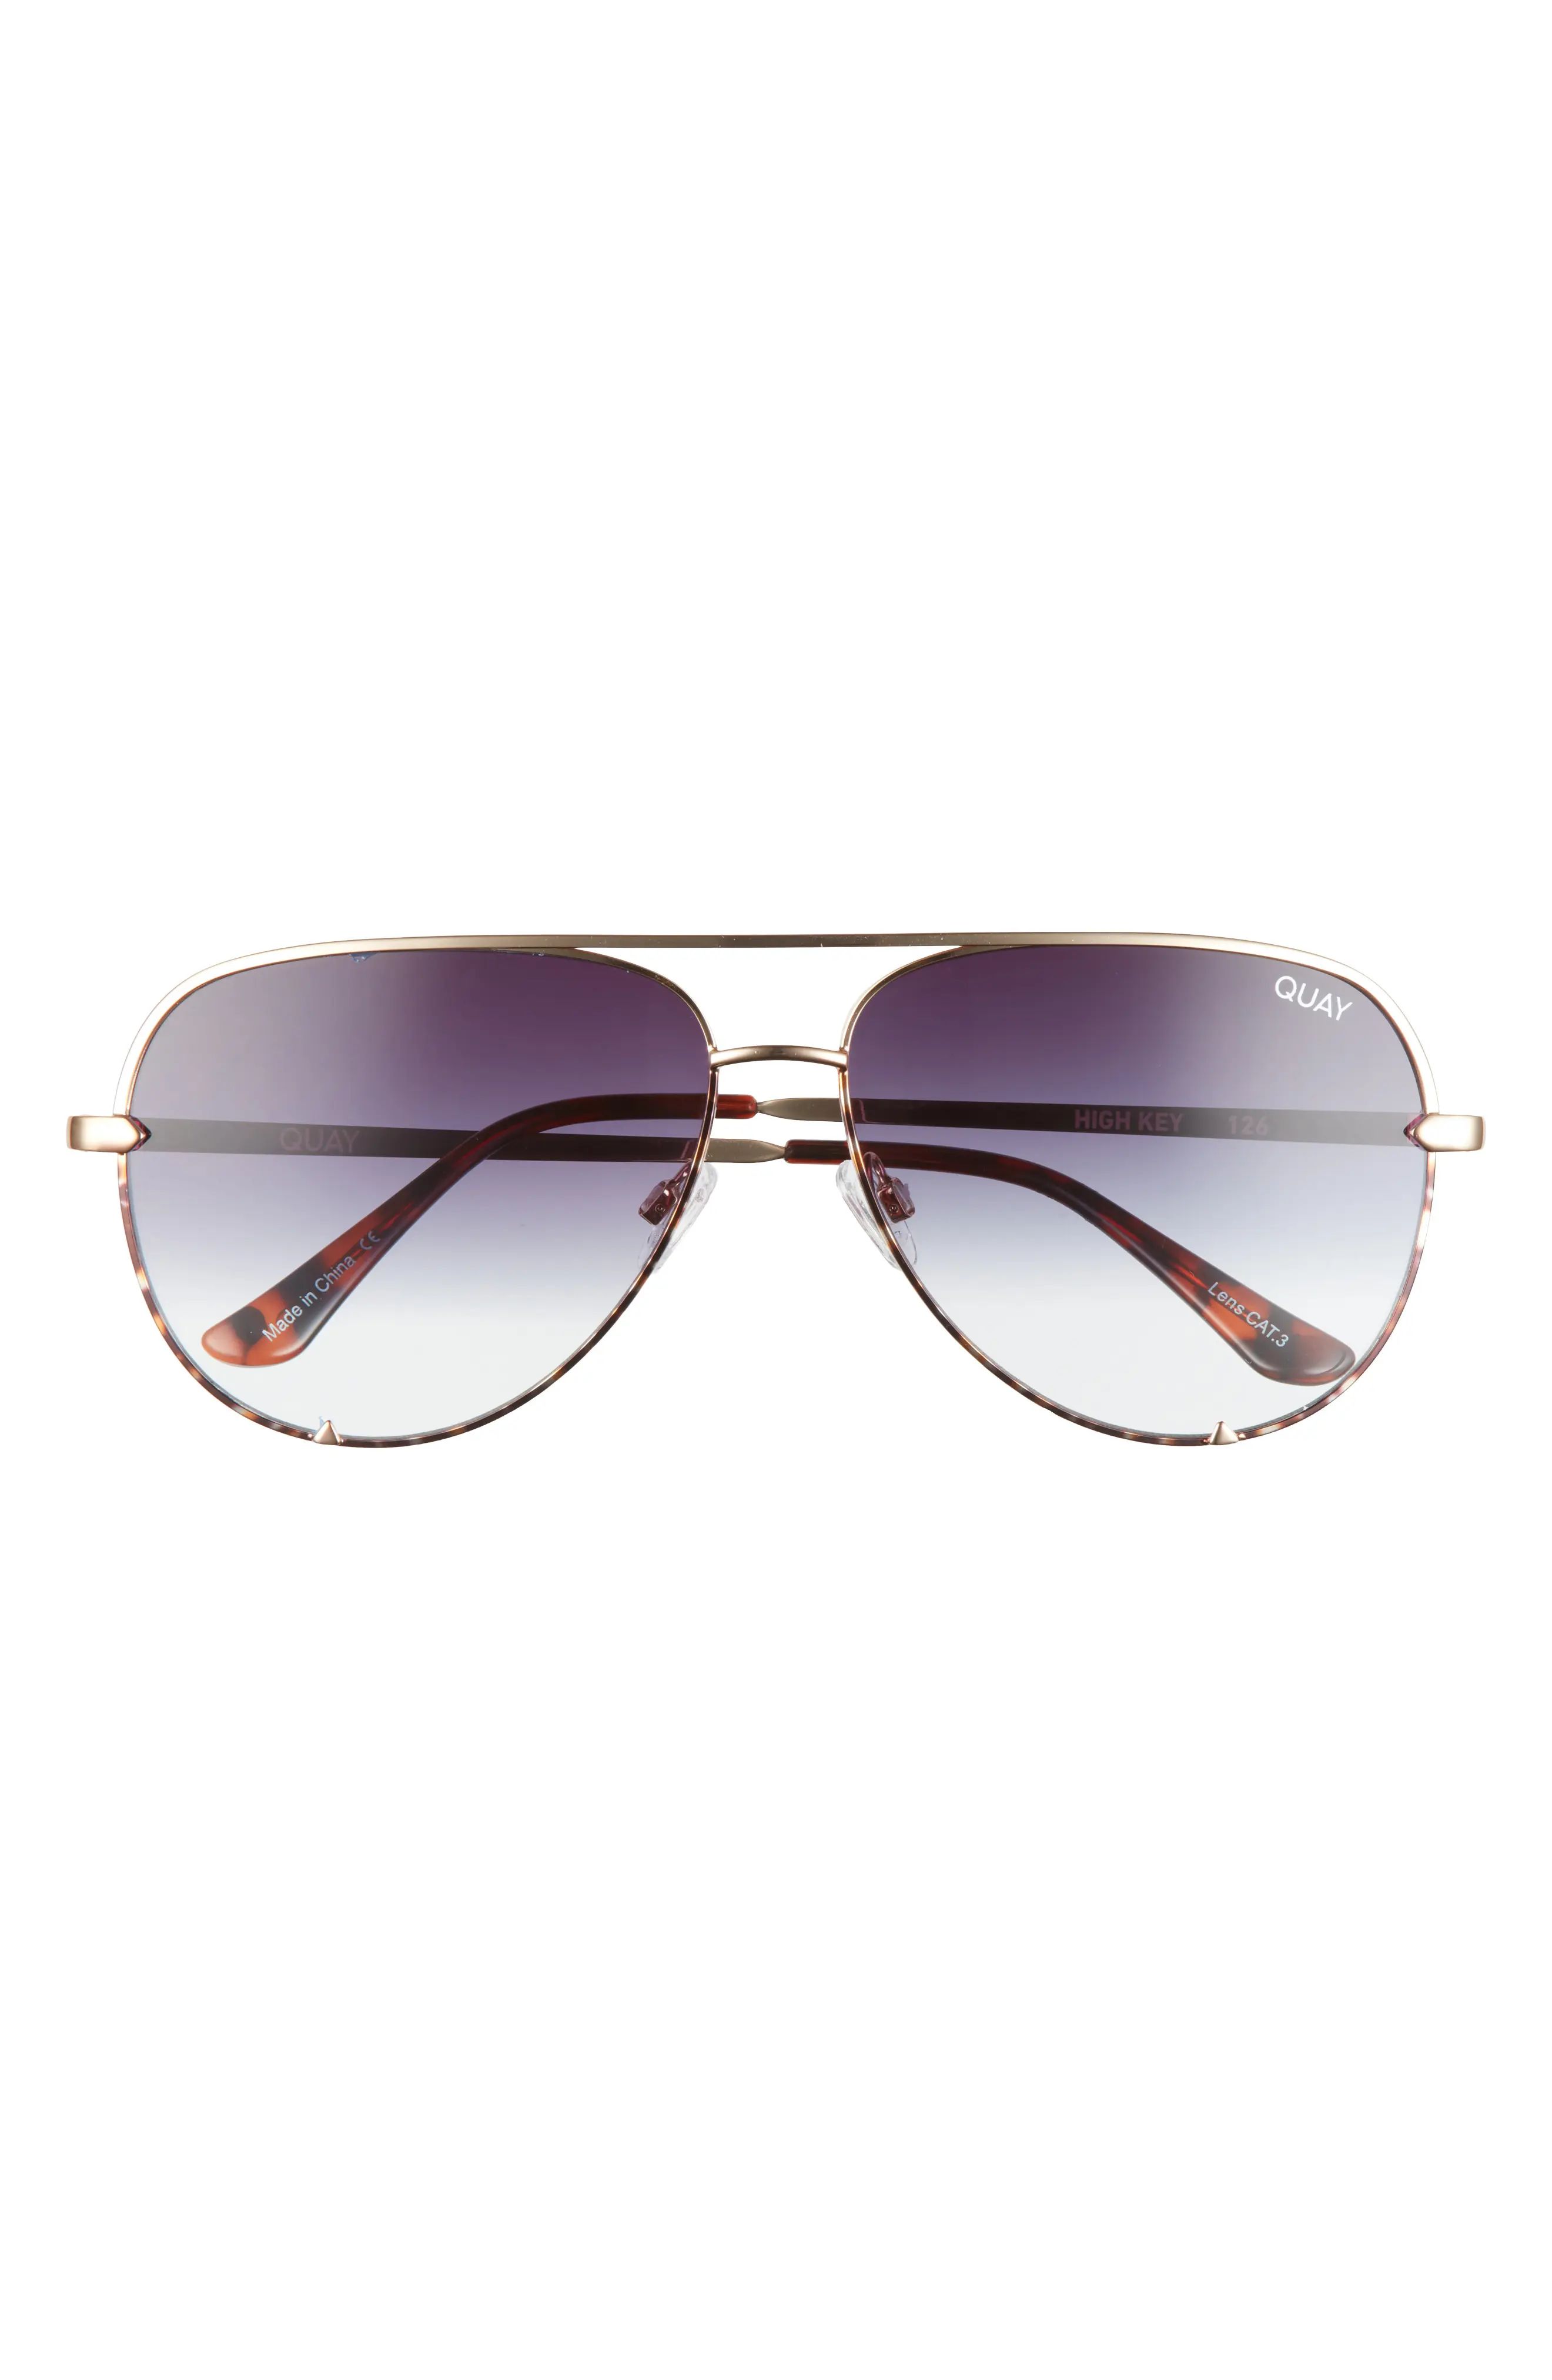 Sunglasses for Women | Nordstrom | Nordstrom